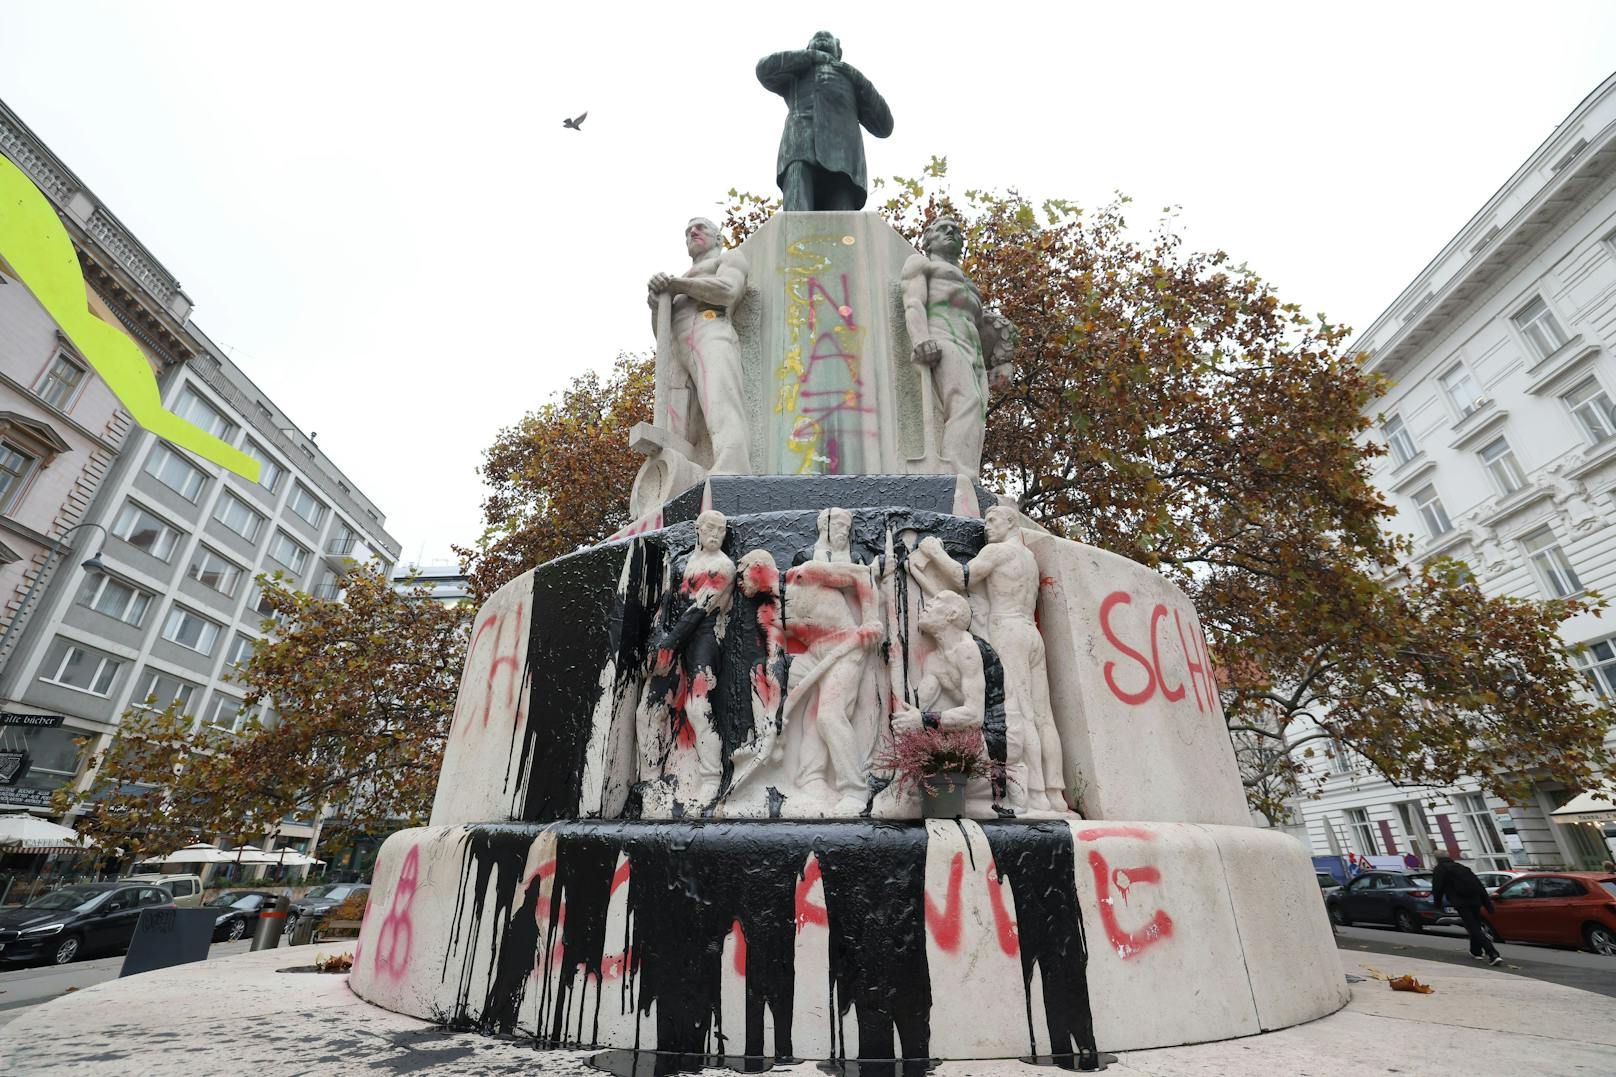 Farbattacke auf umstrittenes Lueger-Denkmal in Wien